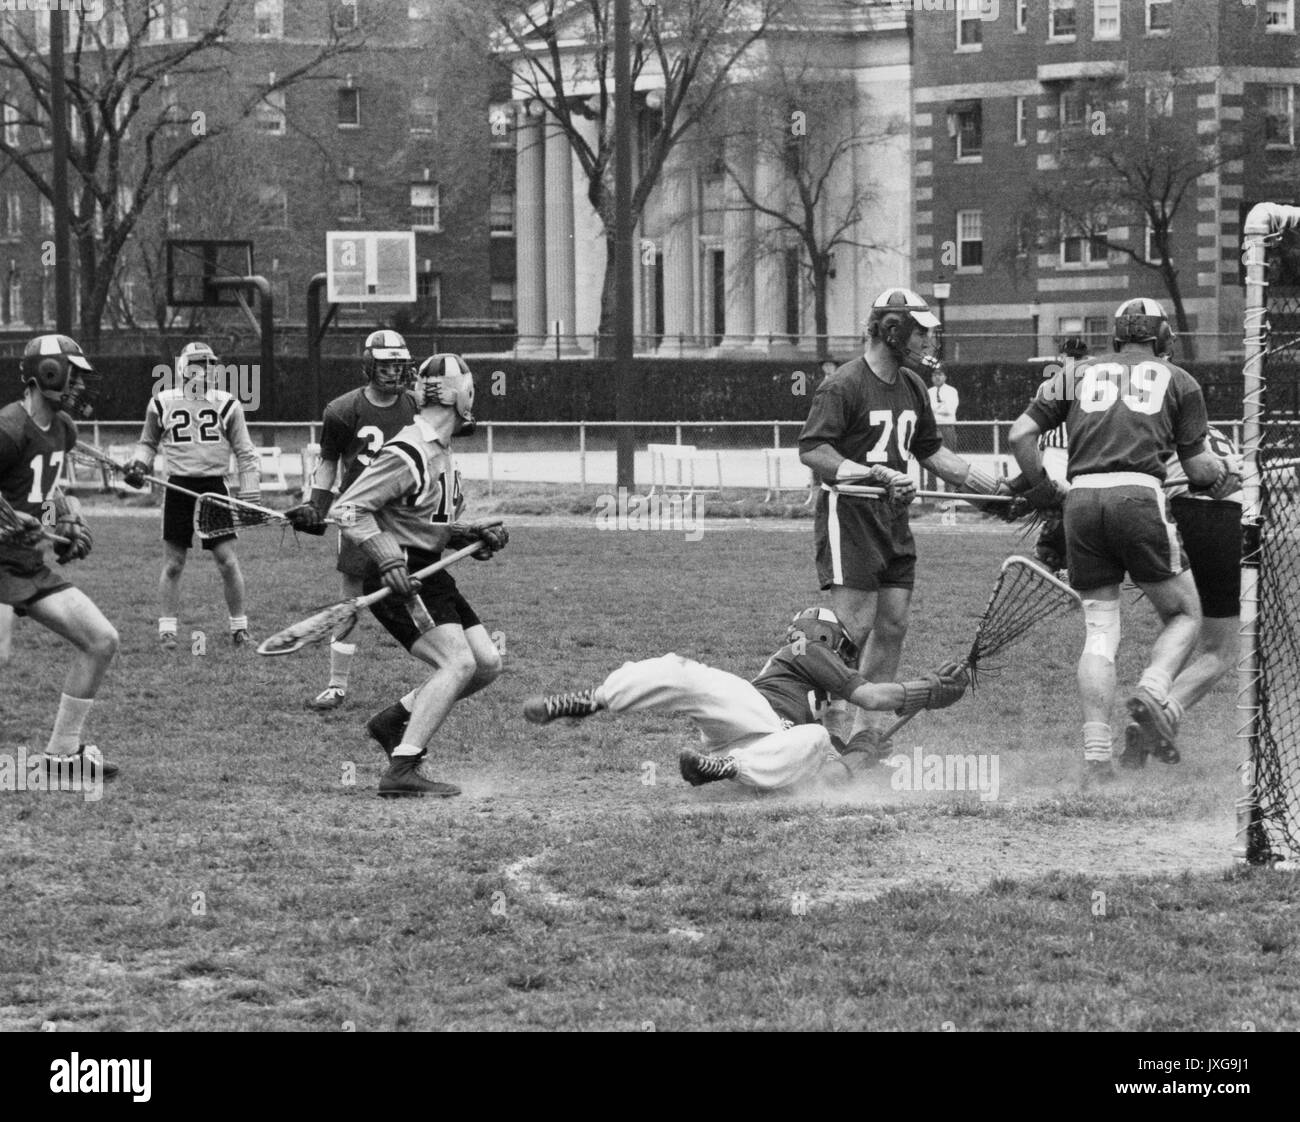 Lacrosse geschossene Tätigkeit während einer unidentifed lacrosse Spiel im Homewood Campus, ein Spieler zu Boden fiel in einer Bemühung, die Kugel zu fangen, 1950er hat. Stockfoto